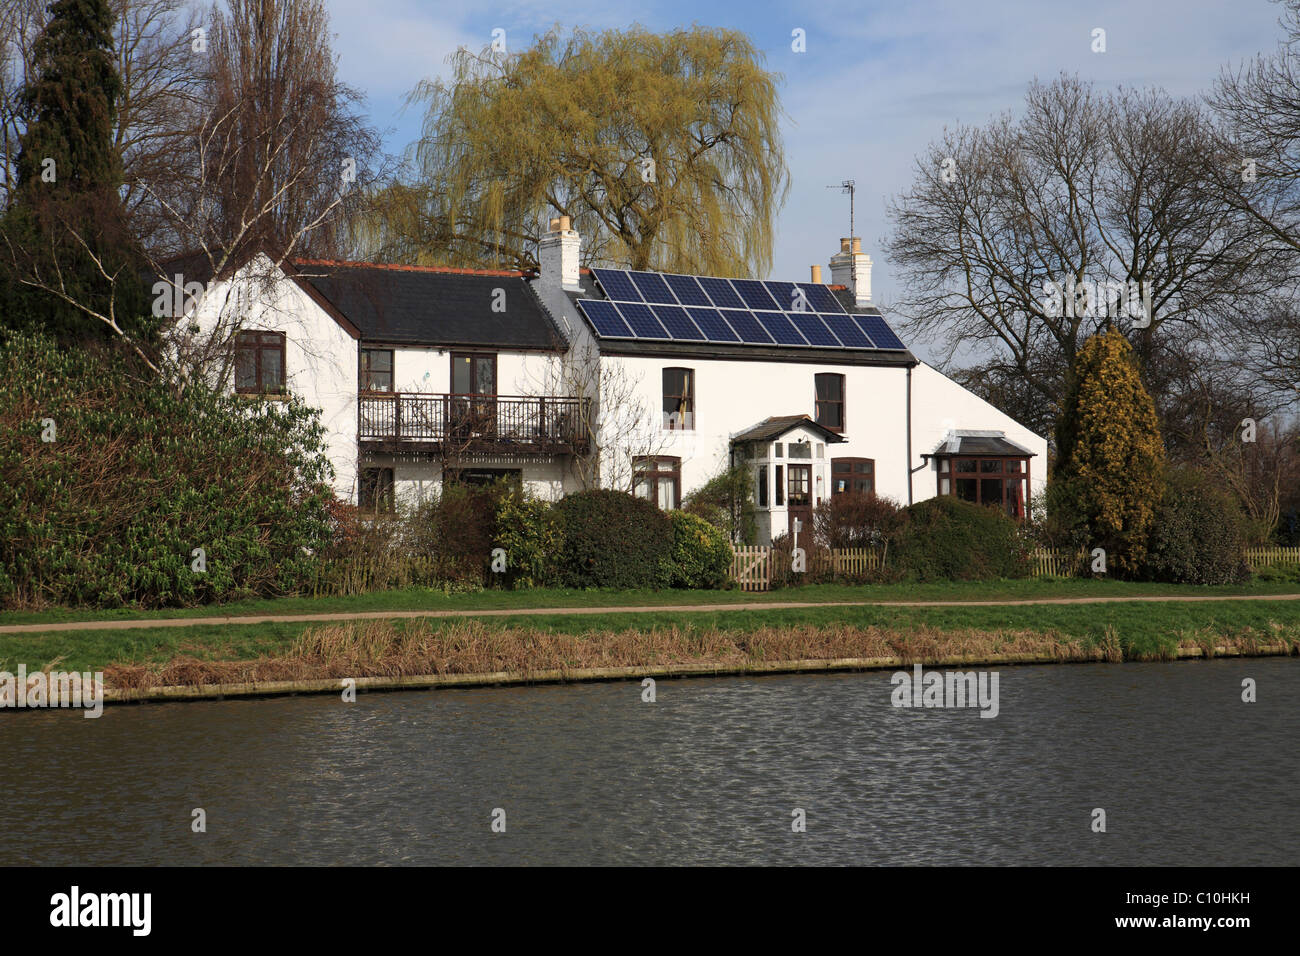 Pannelli solari su un periodo vicino casa, Cambridge, Inghilterra Foto Stock